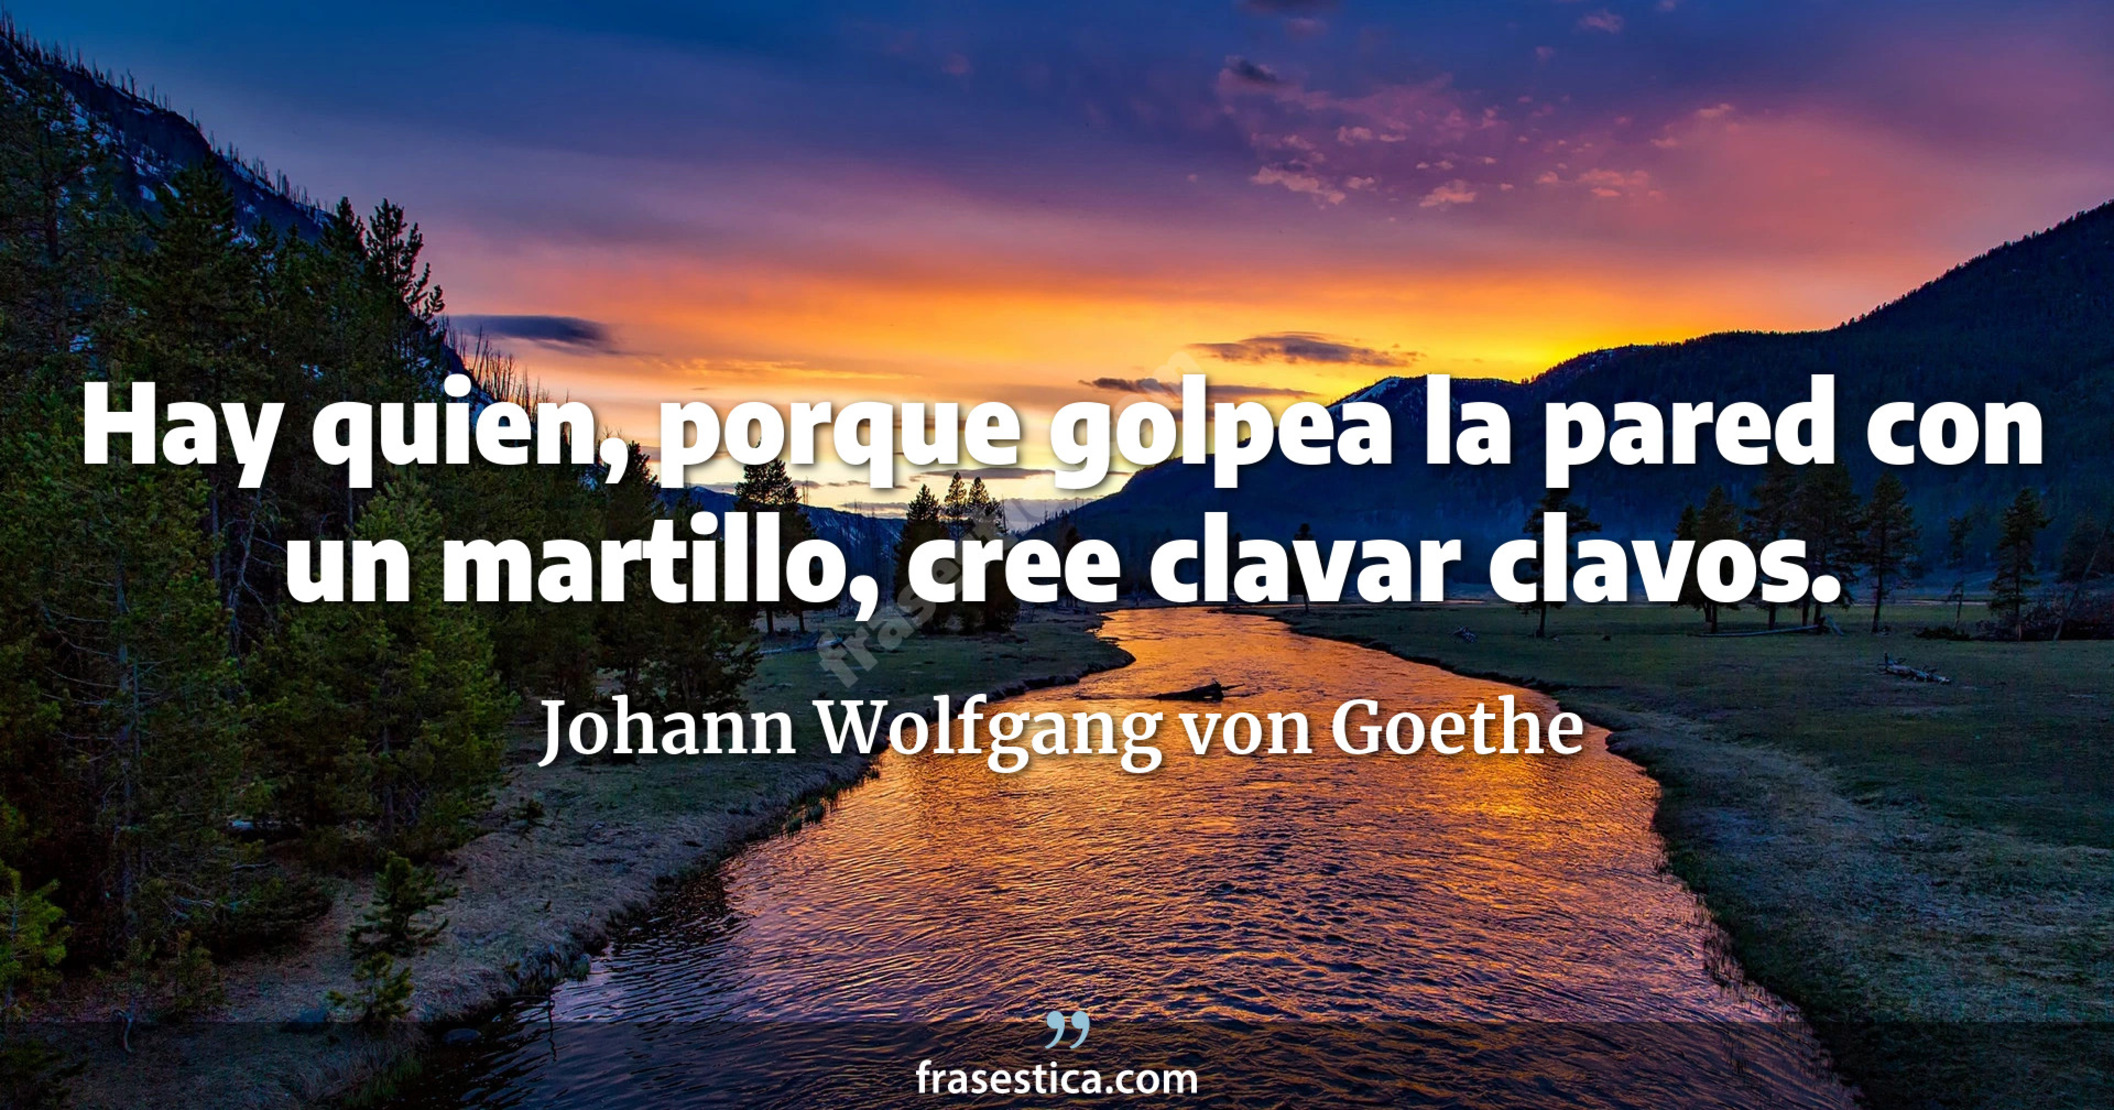 Hay quien, porque golpea la pared con un martillo, cree clavar clavos. - Johann Wolfgang von Goethe